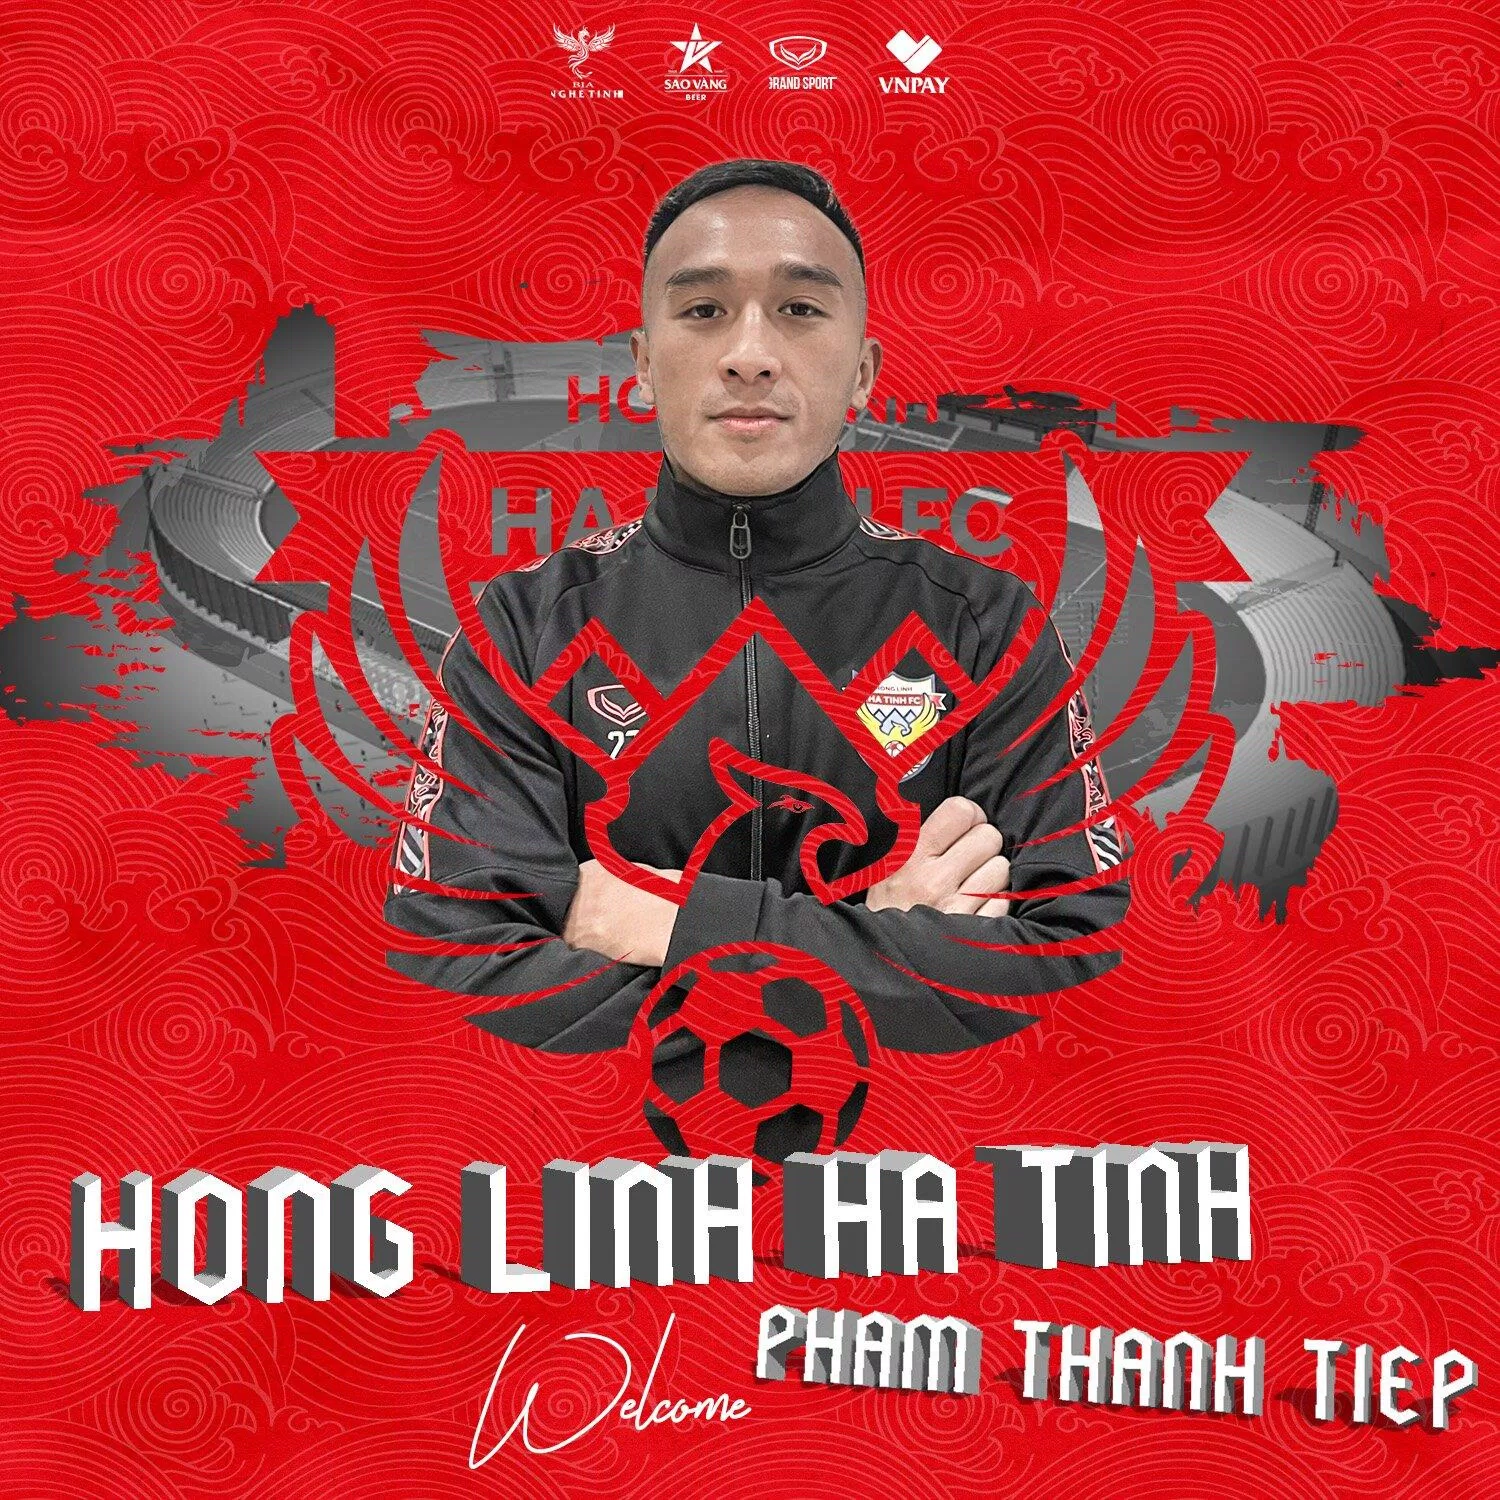 Cầu thủ Việt kiều Slovakia Phạm Thanh Tiệp khoác áo Hồng Lĩnh Hà Tĩnh (Ảnh: Internet)